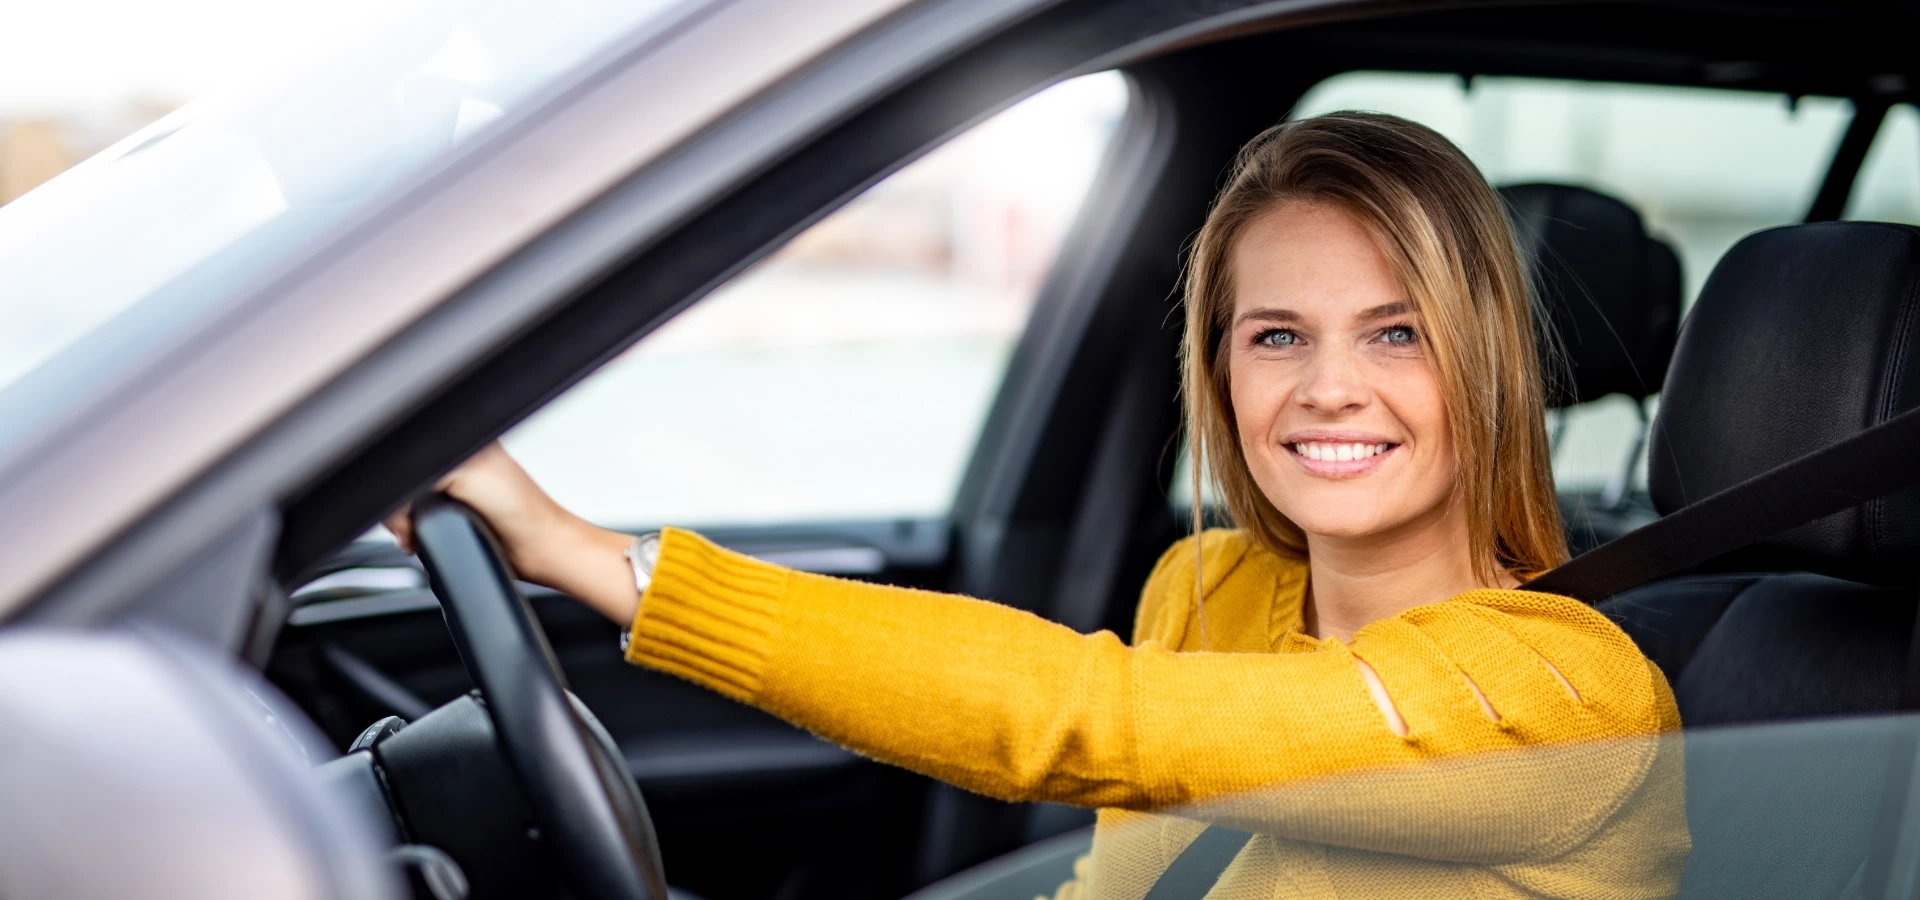 Zadowolona kobieta za kierownicą samochodu